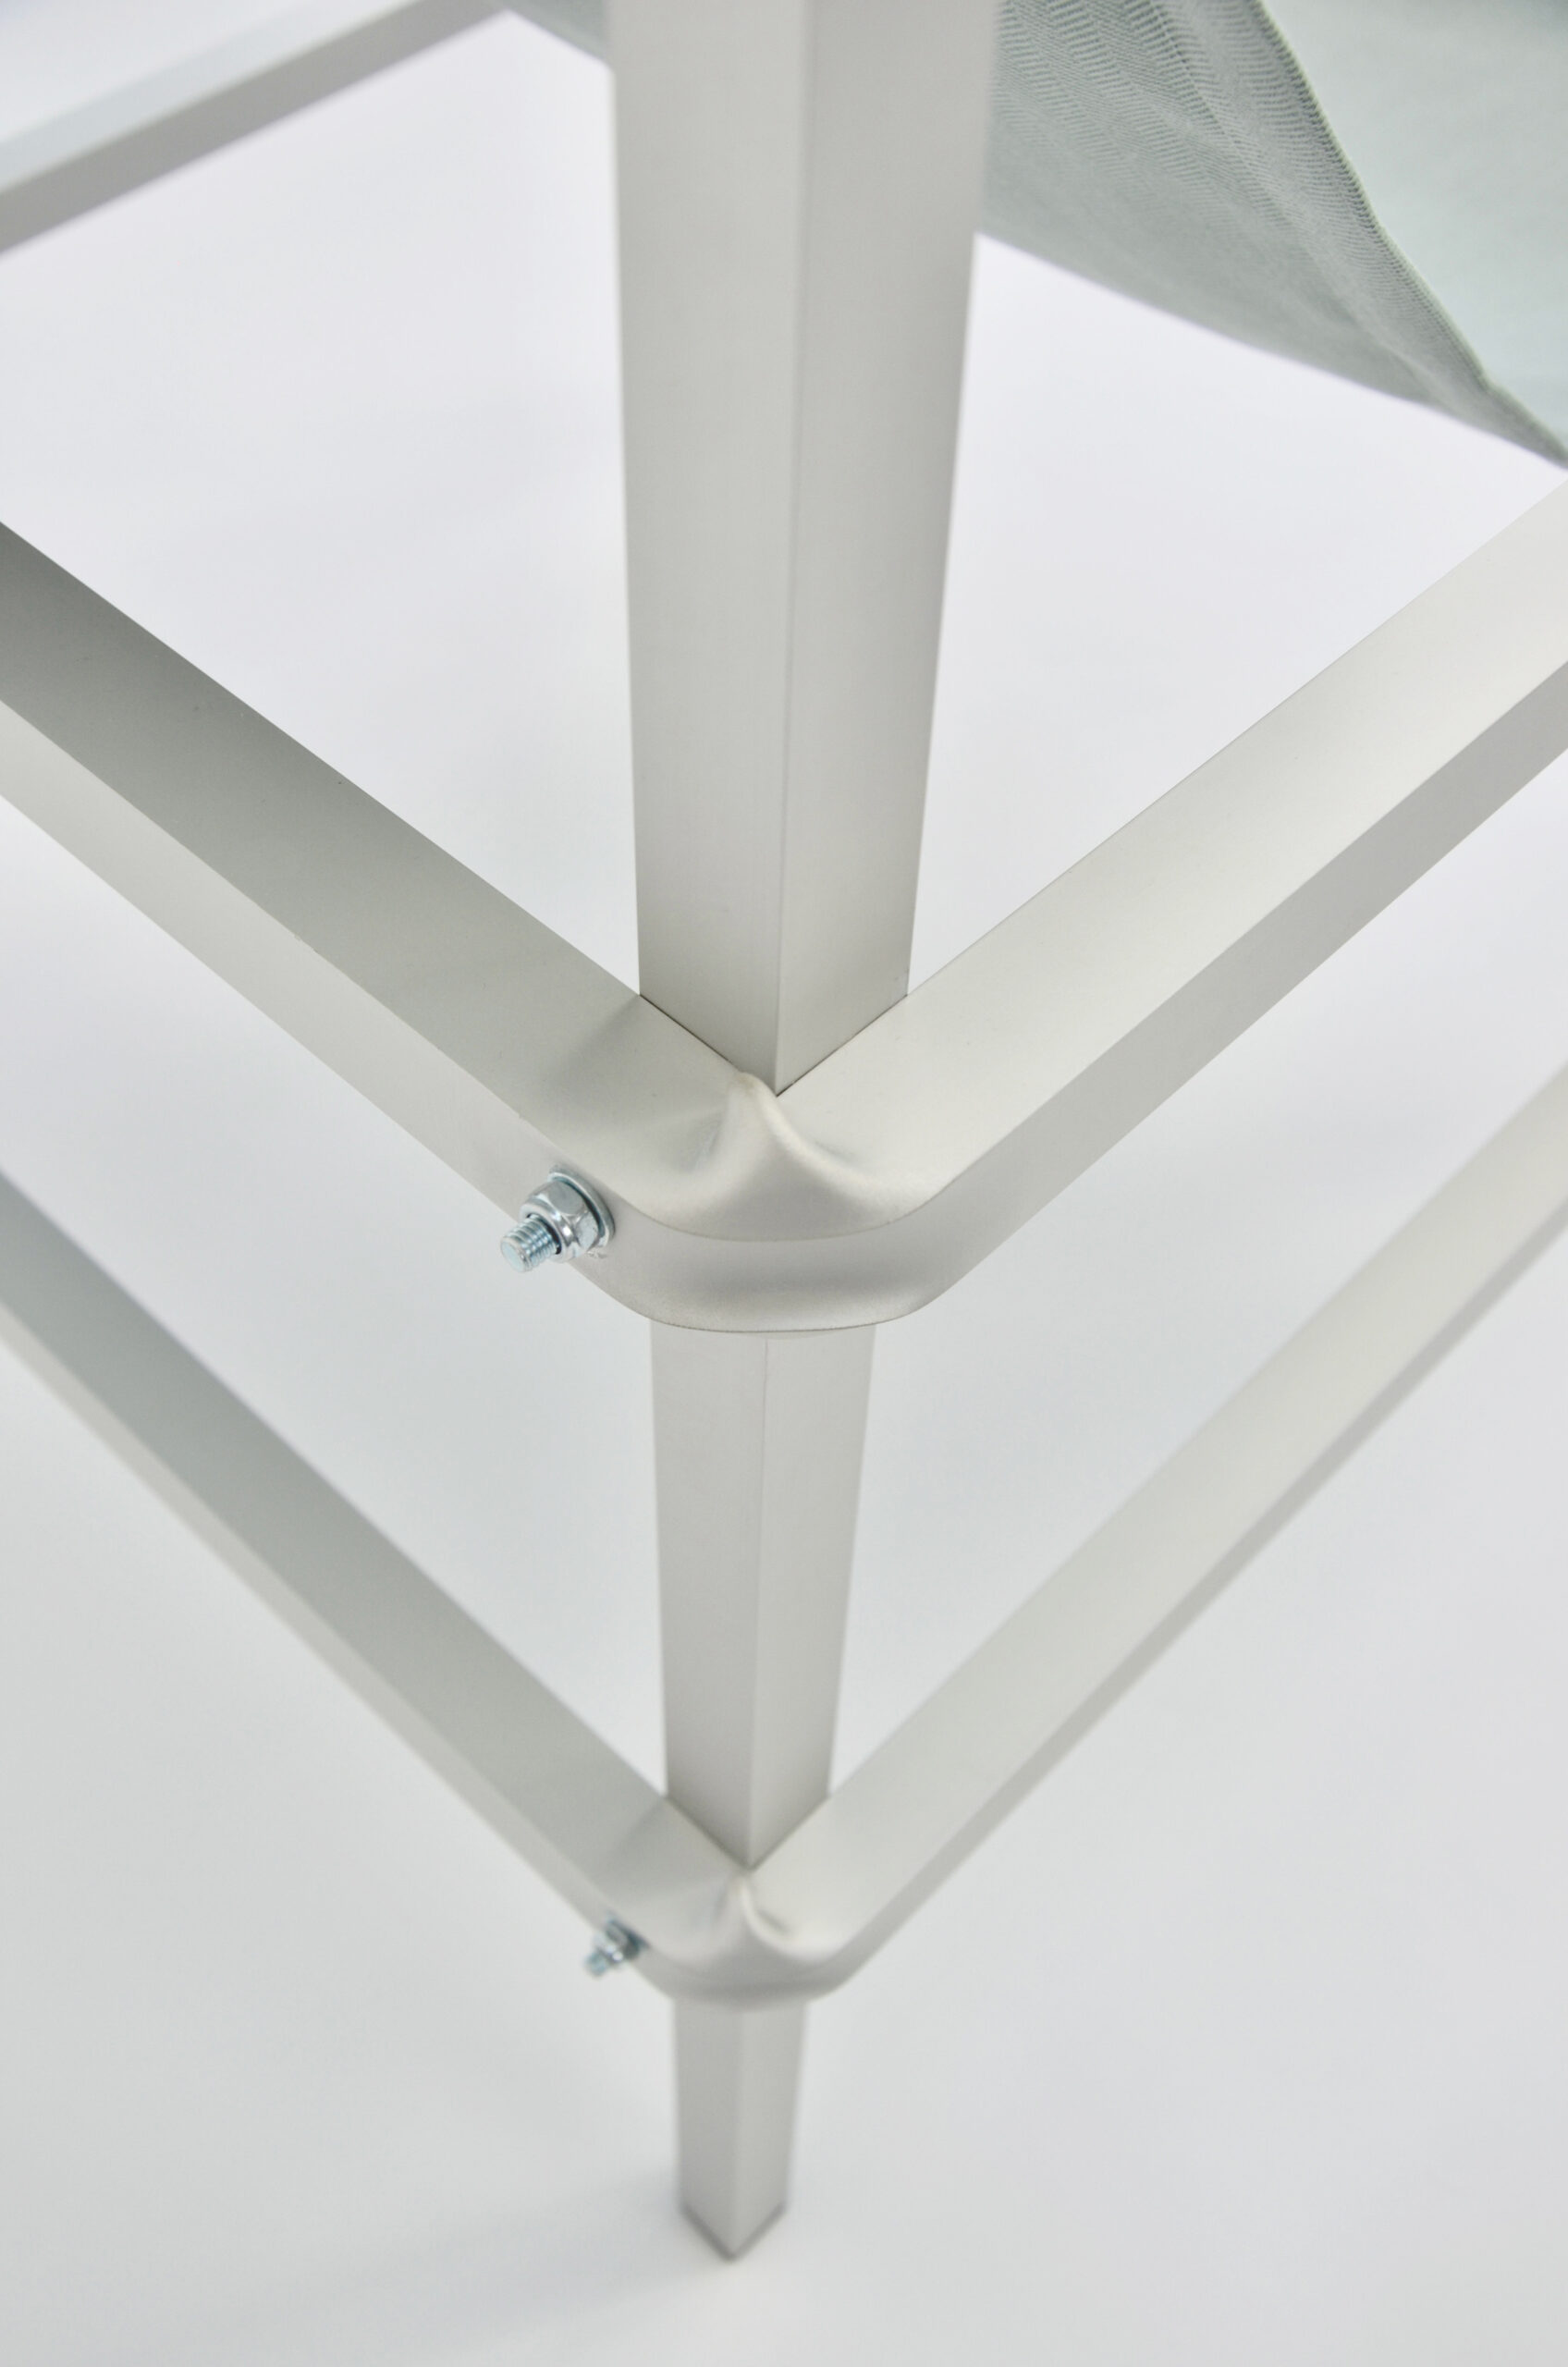 Detail eines aluminium Stuhlbeines vor einem weißen Hintergrund